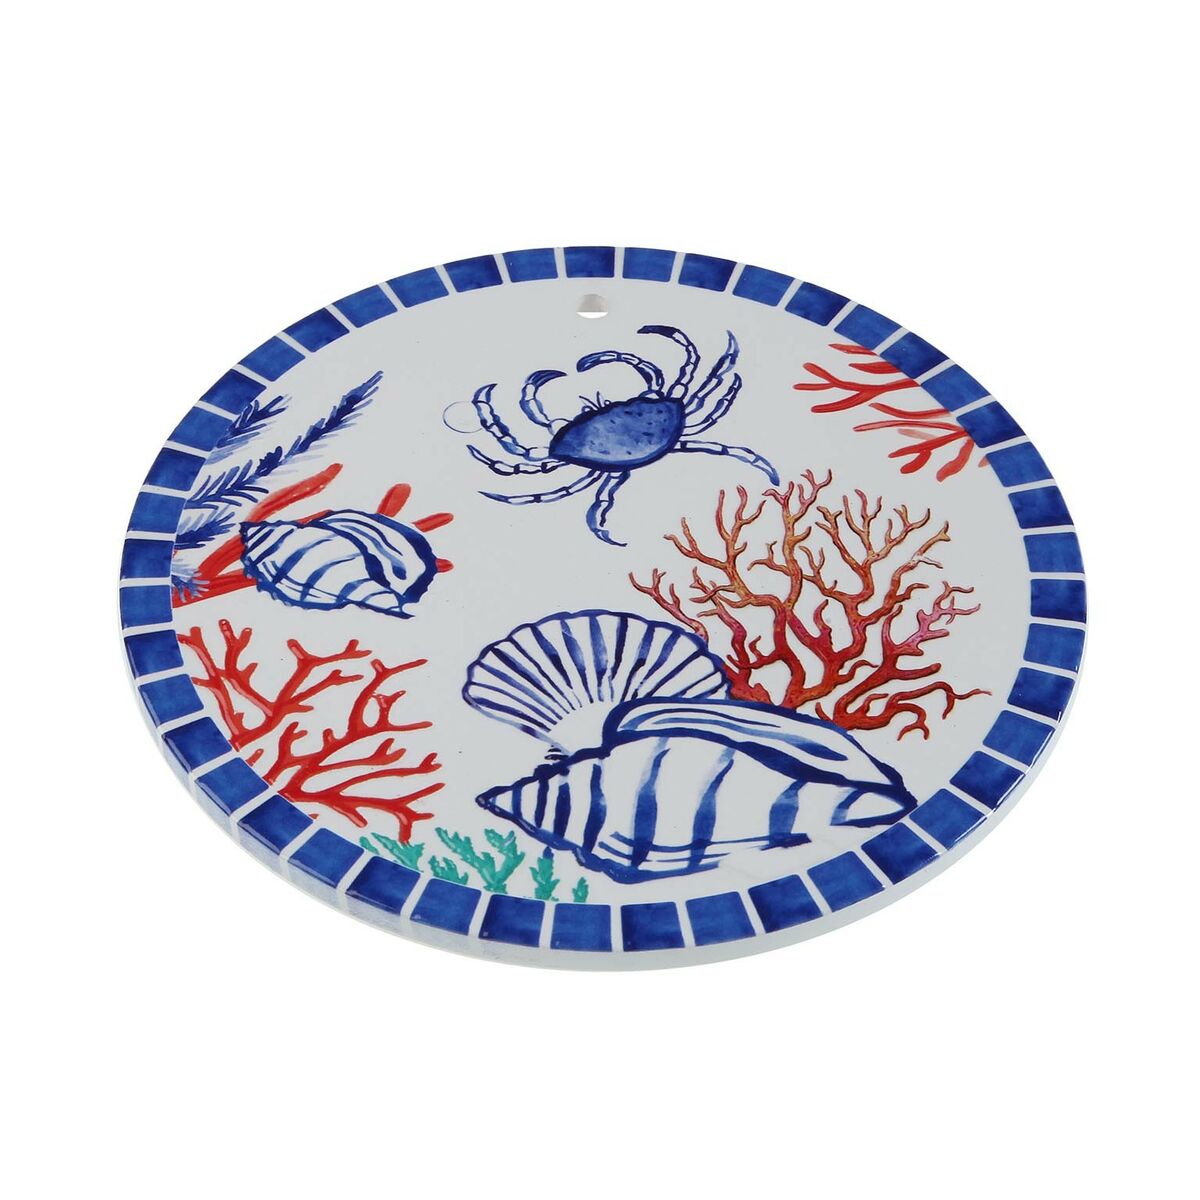 Untersetzer Versa Meeresschnecke Kork aus Keramik 20 x 20 cm